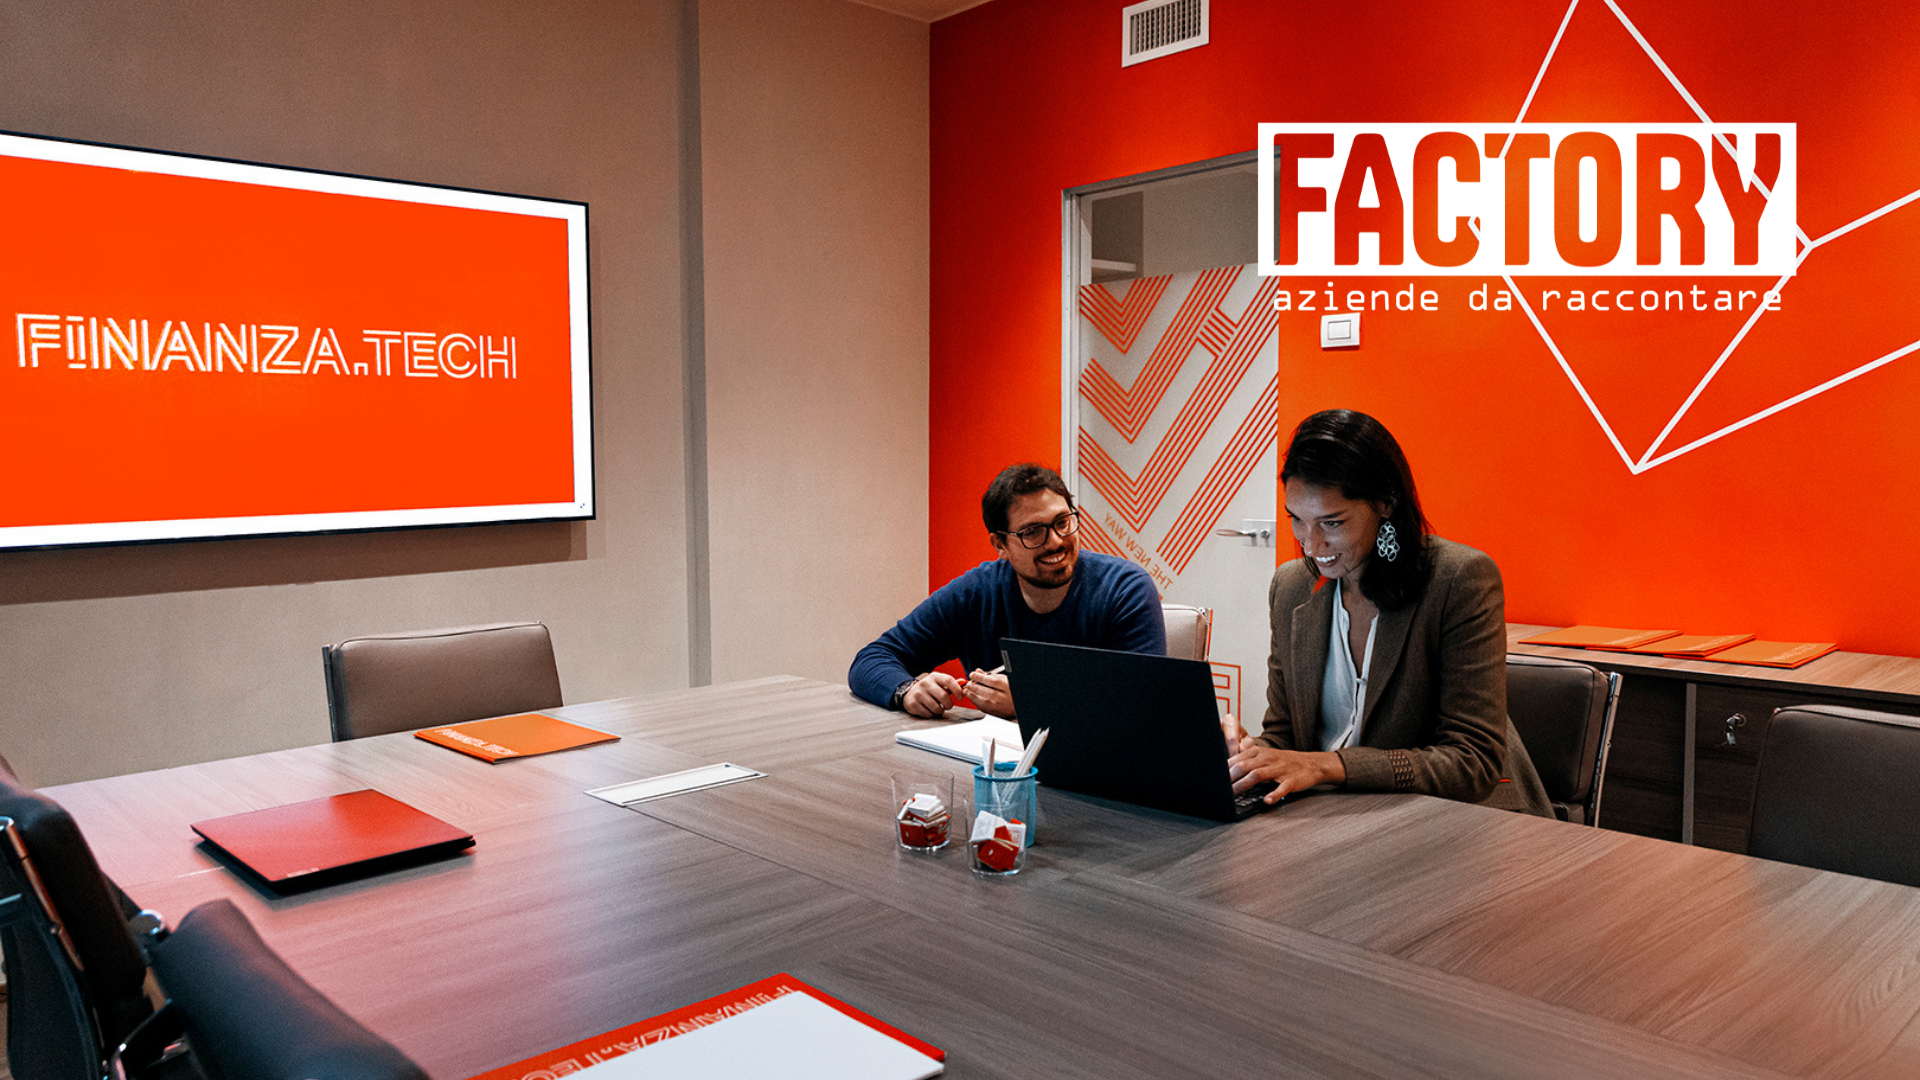 Factory | Finanza.tech supporta le PMI grazie al digitale